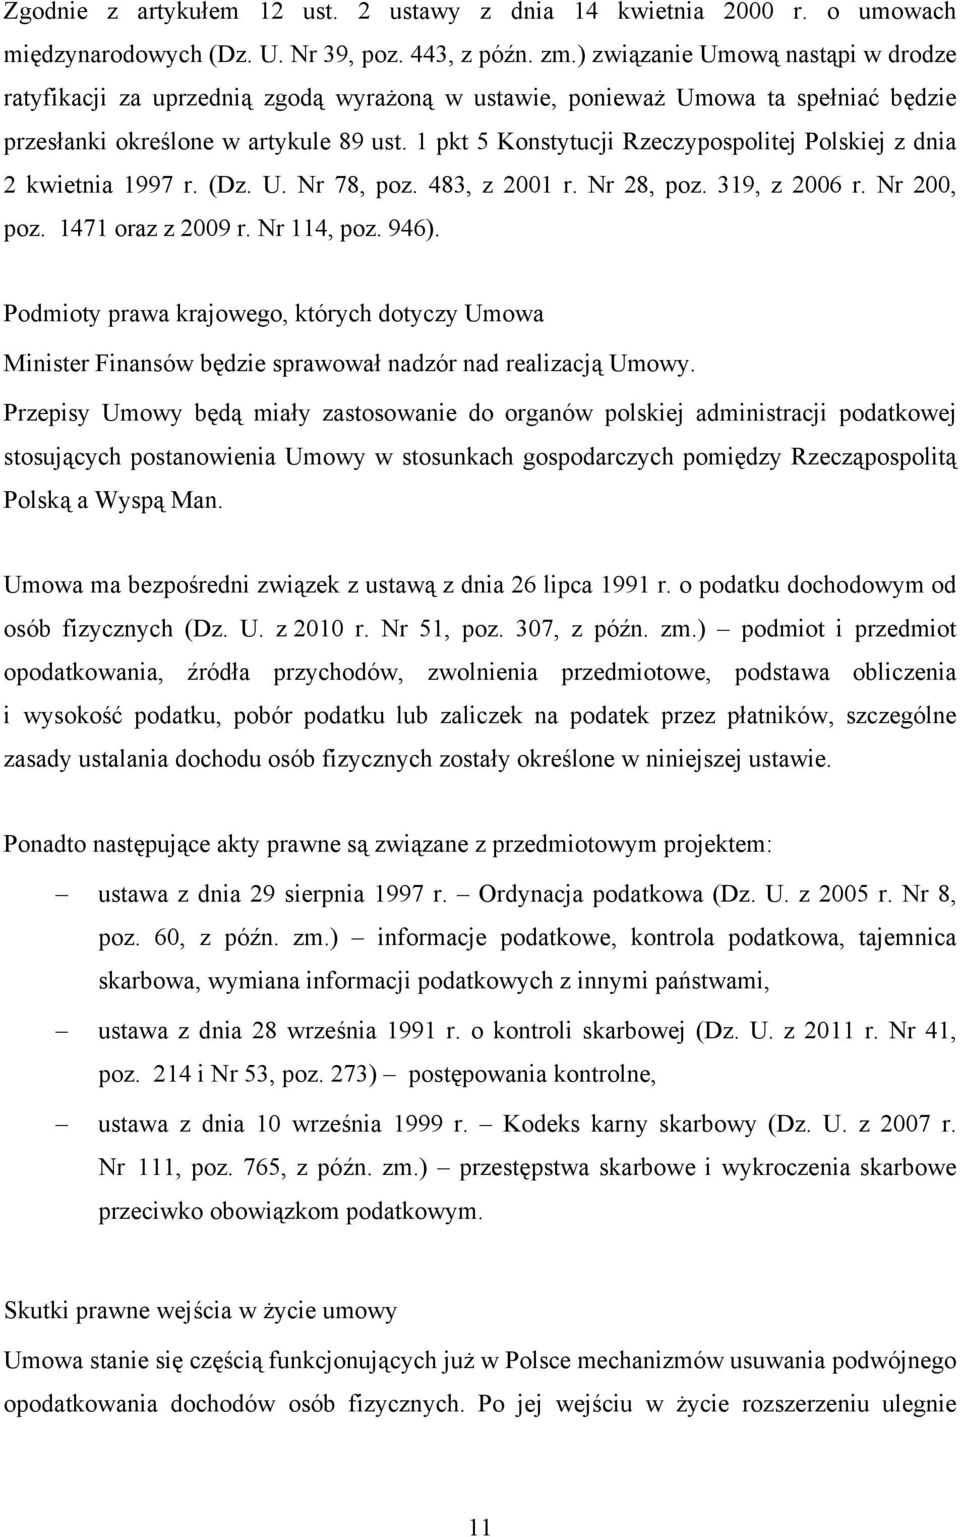 1 pkt 5 Konstytucji Rzeczypospolitej Polskiej z dnia 2 kwietnia 1997 r. (Dz. U. Nr 78, poz. 483, z 2001 r. Nr 28, poz. 319, z 2006 r. Nr 200, poz. 1471 oraz z 2009 r. Nr 114, poz. 946).